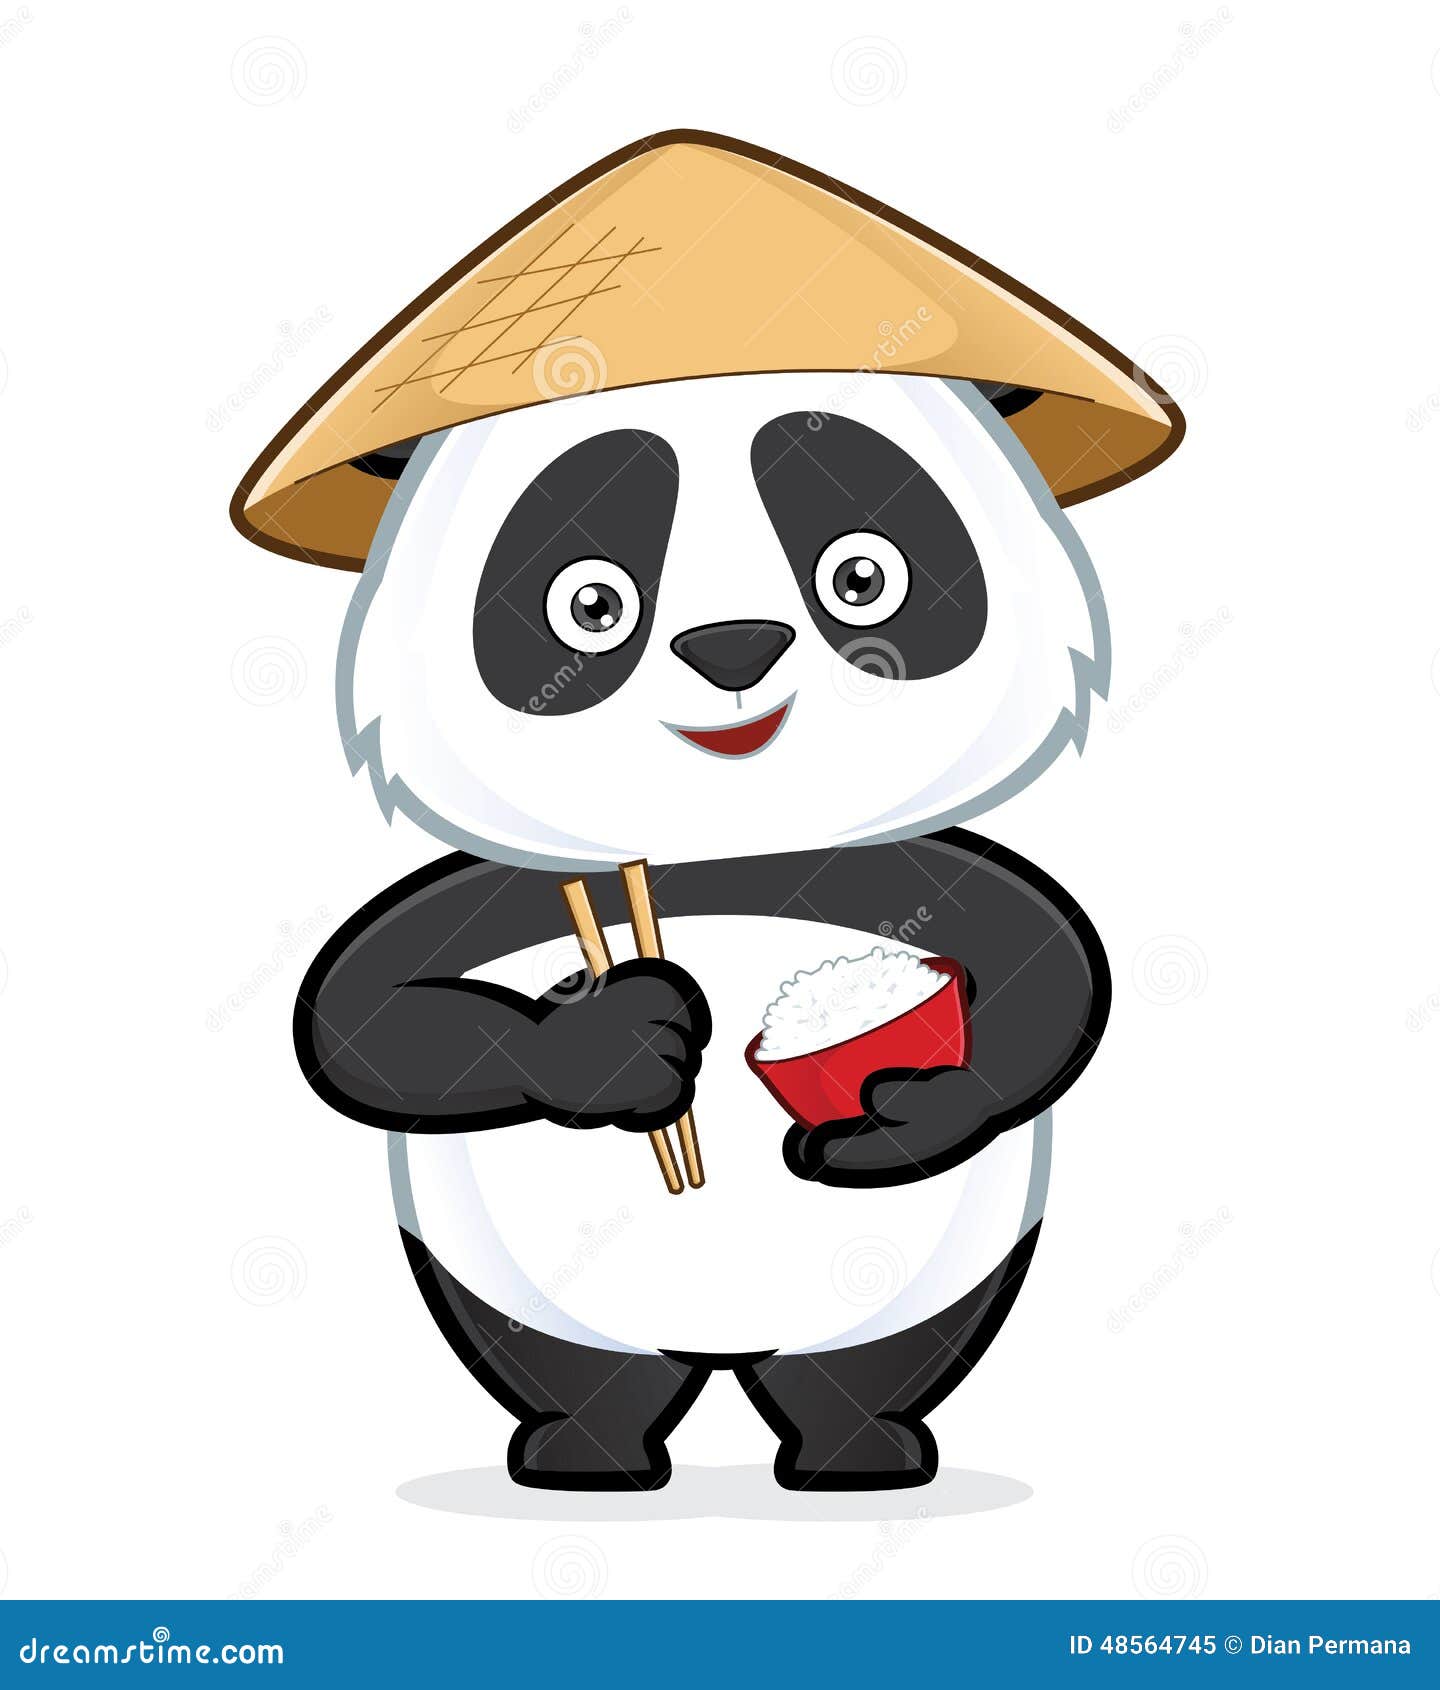 Panda Rice Cartoon Stock Illustrations – 73 Panda Rice Cartoon Stock  Illustrations, Vectors & Clipart - Dreamstime